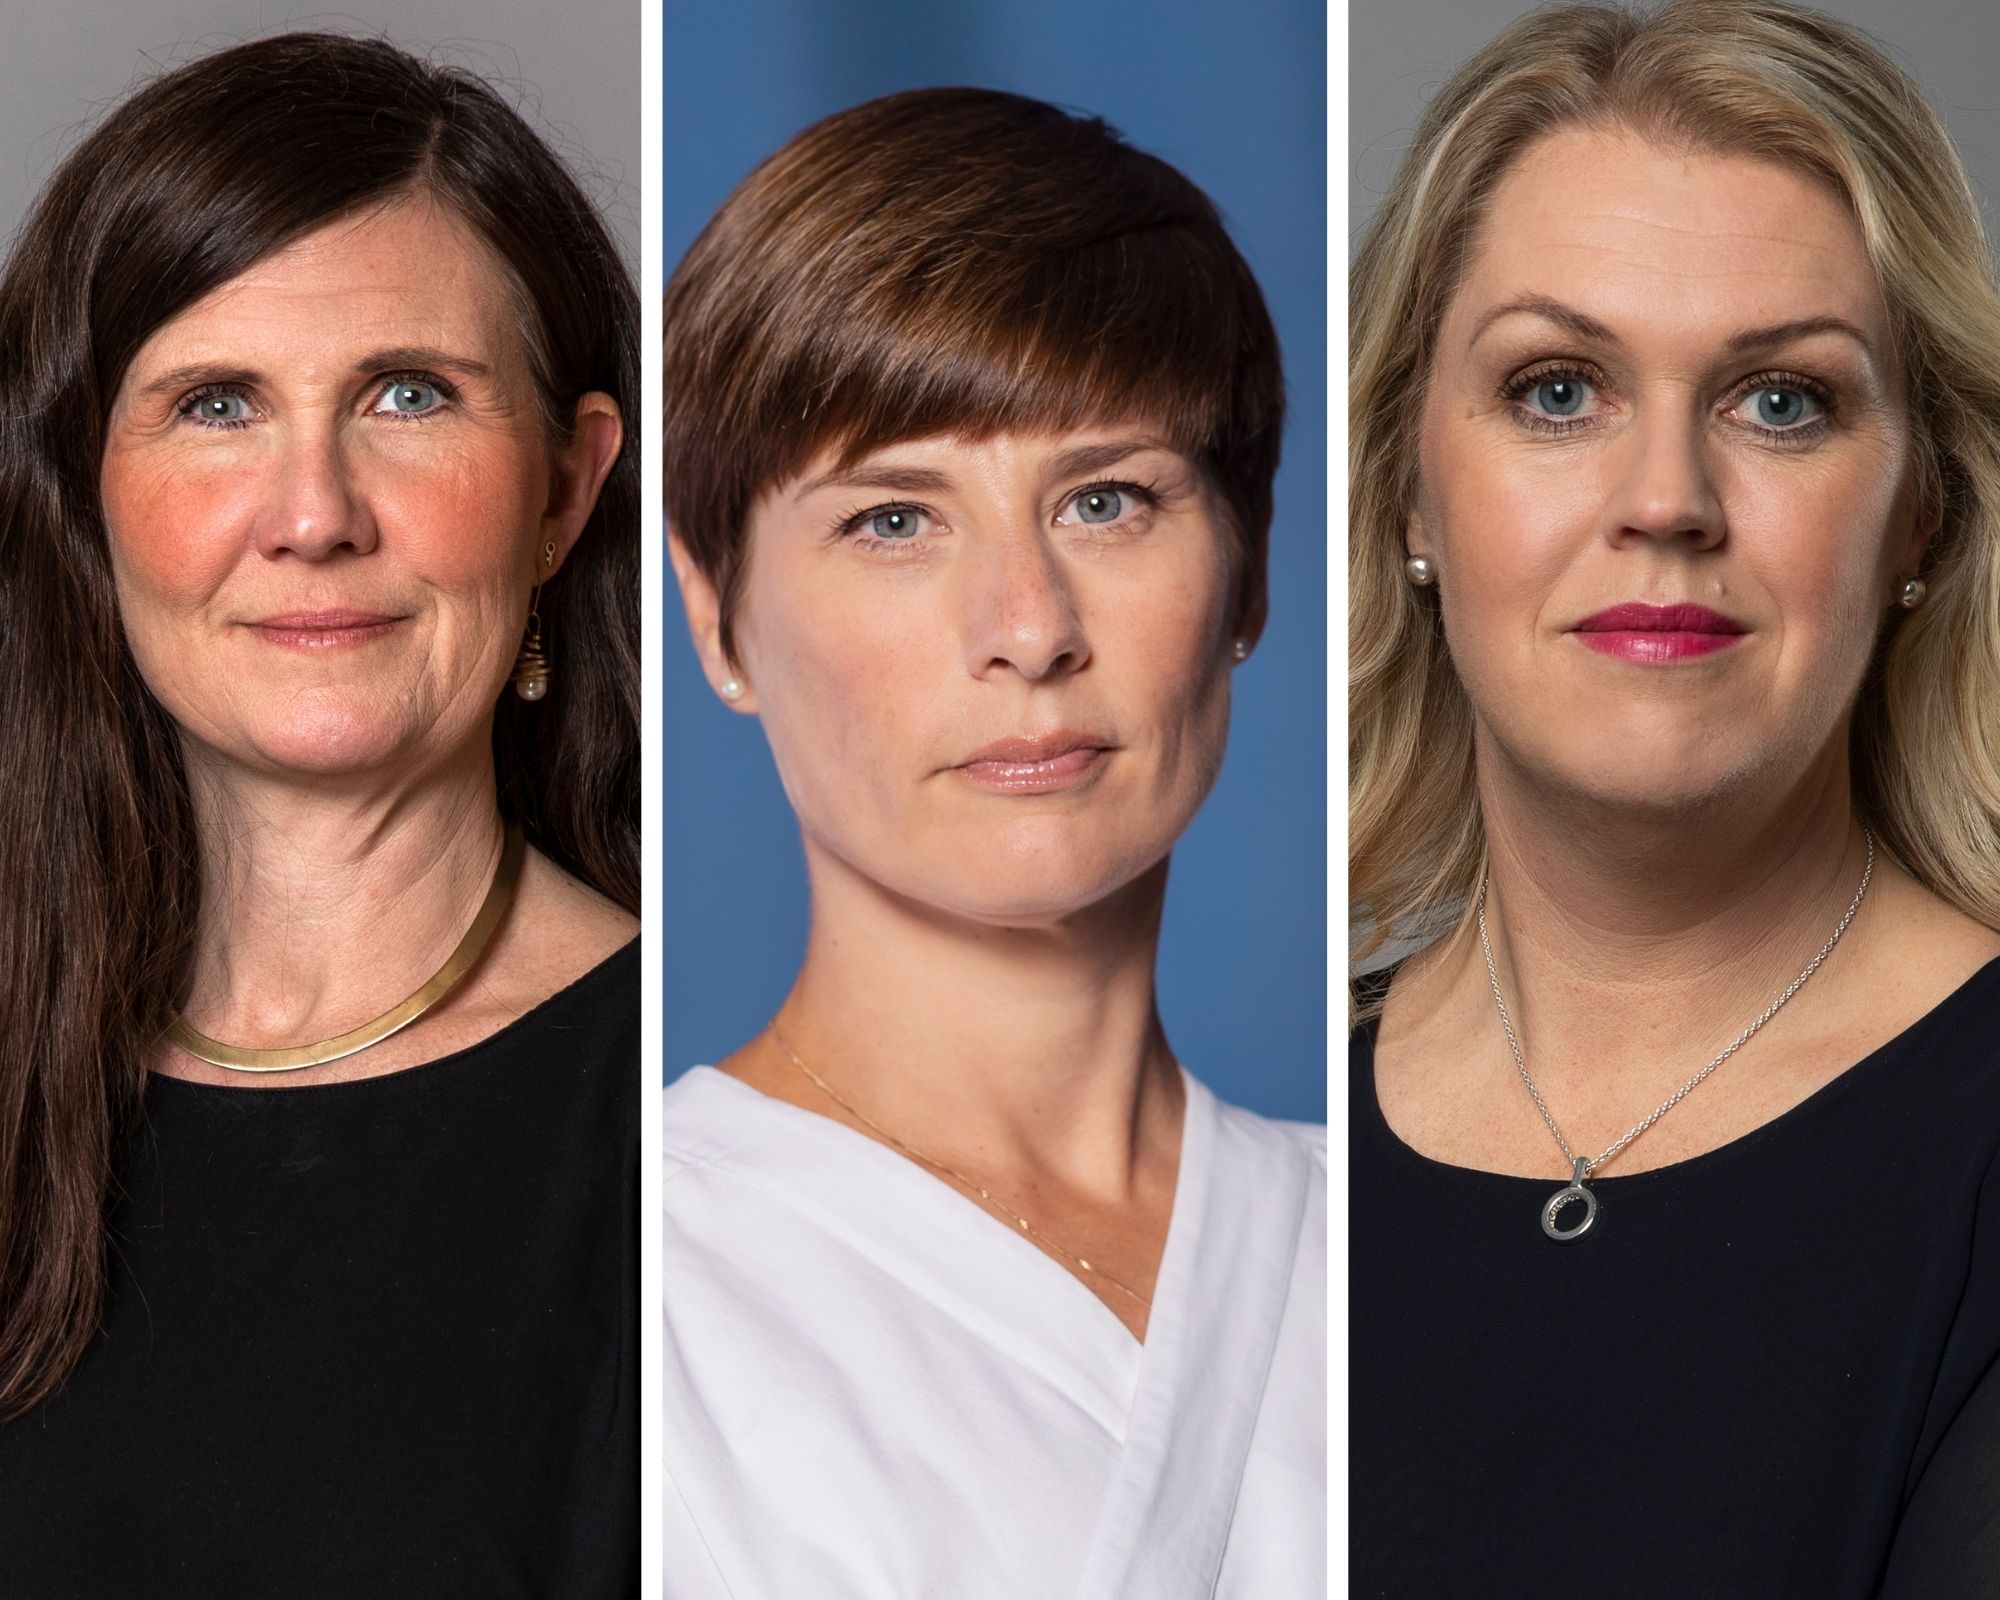 Bra att regeringen tar diskriminering på allvar - Sveriges läkarförbund